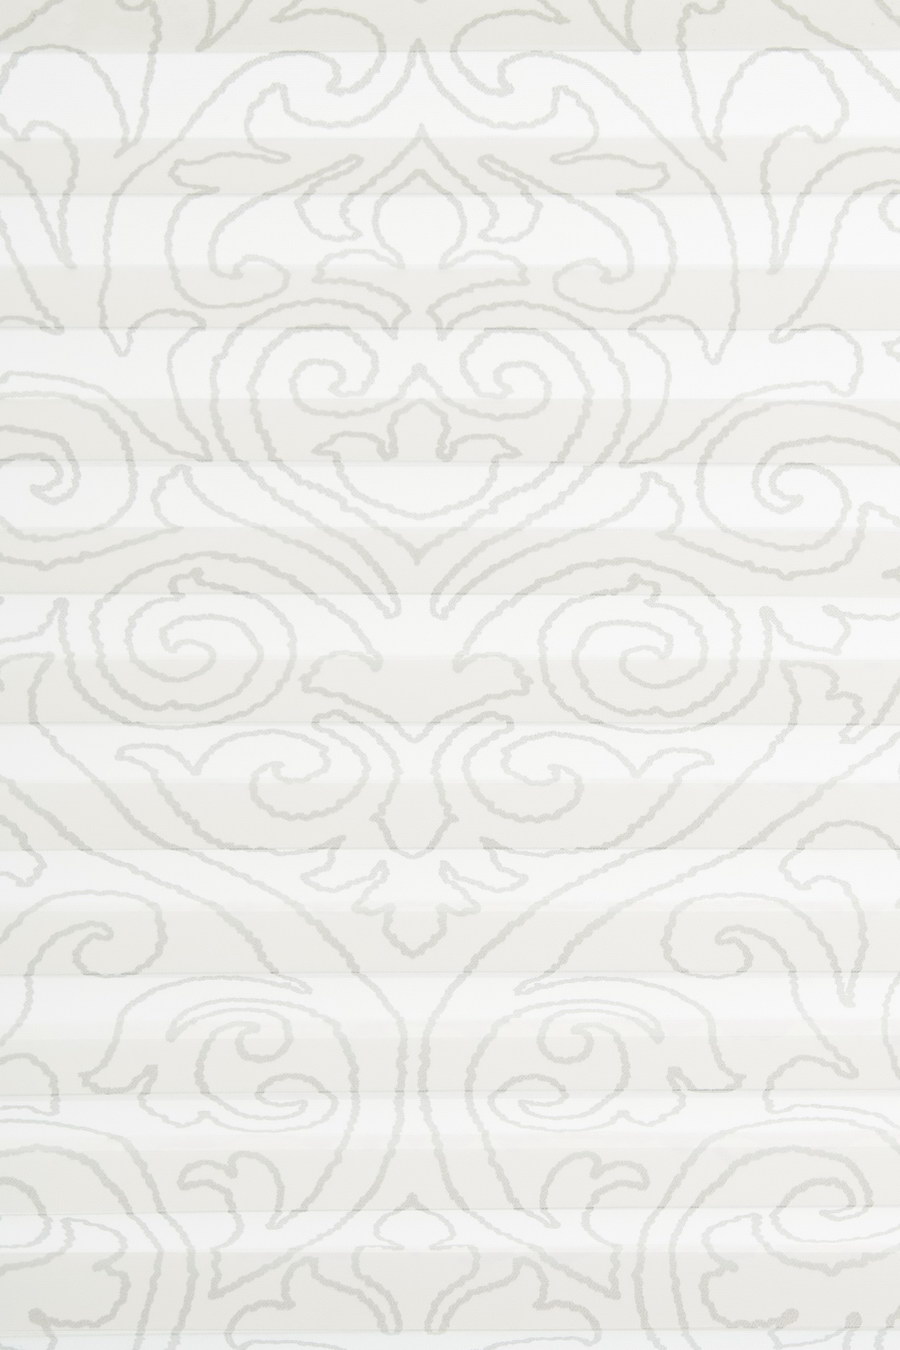 Ткань CALIFORNIA BAROQUE white 2271 для штор плиссе